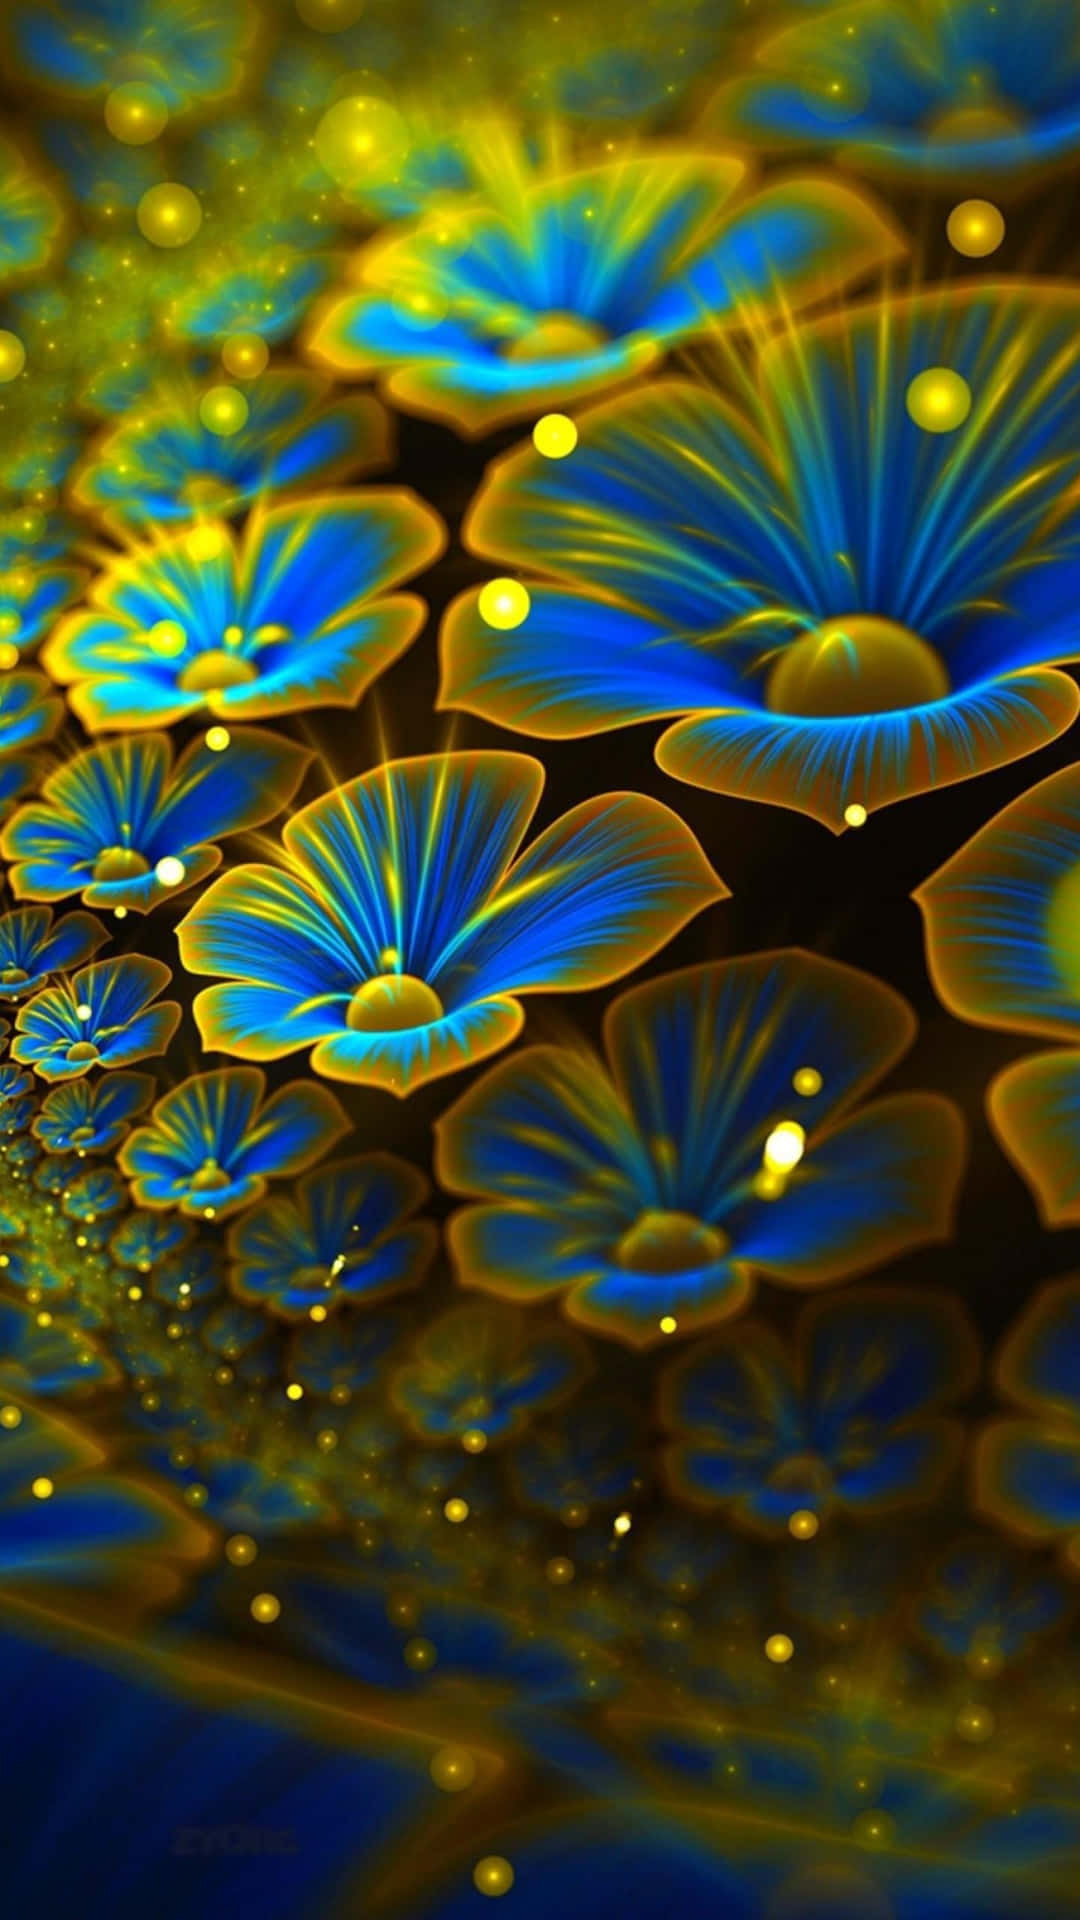 Stunning 3D Flower Close-Up Wallpaper